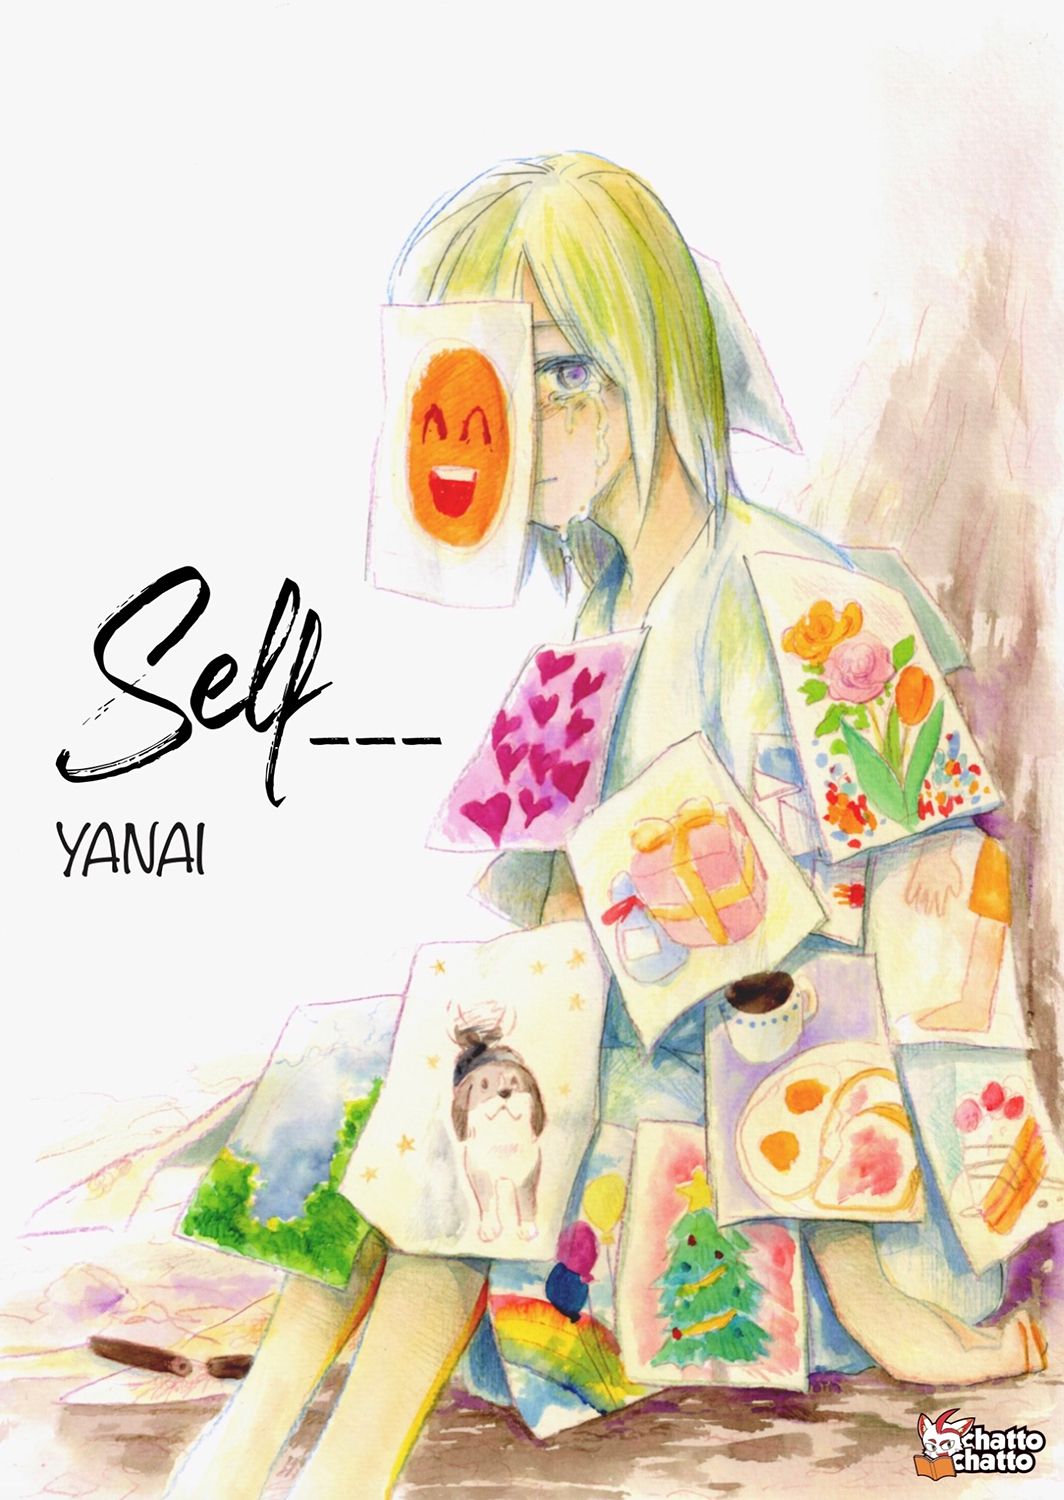 Interview de Yanai sur Self___, son manga autobiographique sur la dépression0